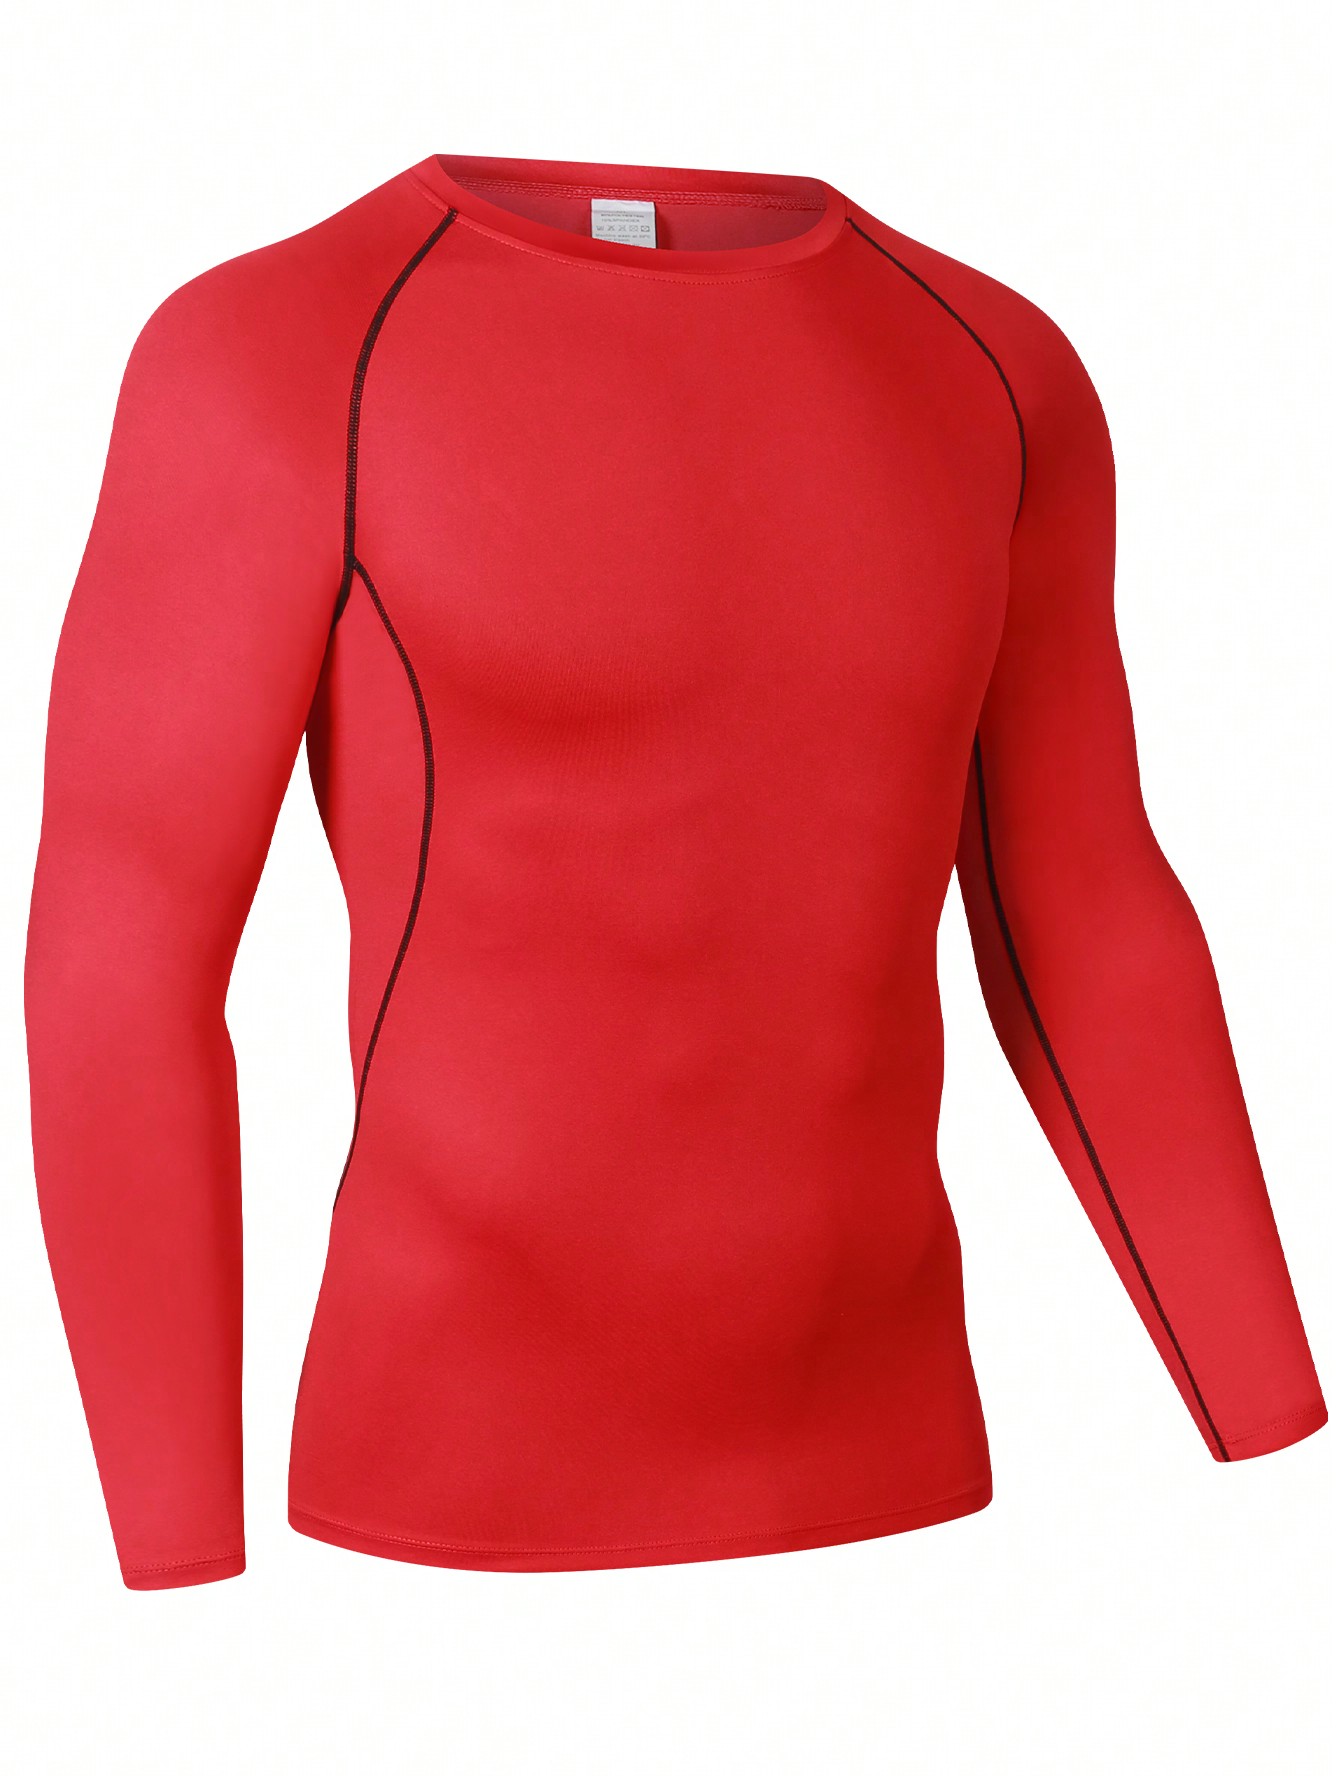 Мужская эластичная компрессионная рубашка для фитнеса с длинными рукавами, красный майка мужская хлопковая для бега и фитнеса приталенная повседневная рубашка без рукавов топ для спортзала 7 цветов 1 шт